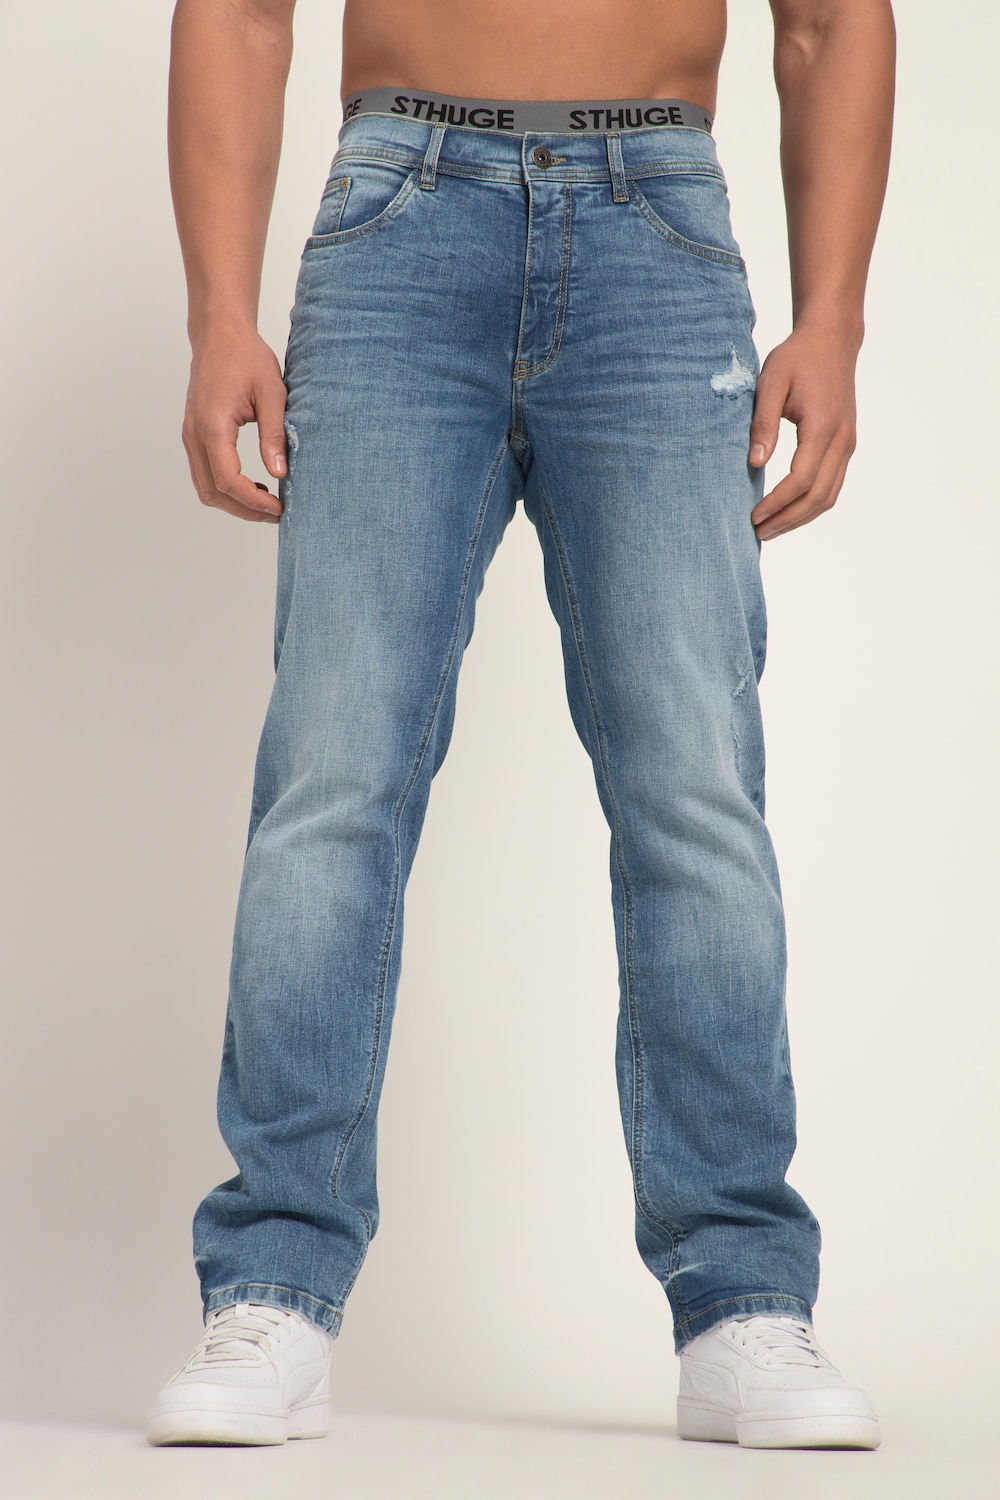 Grote Maten STHUGE Jeans FLEXLASTIC®male, blauw, Maat: 30, Katoen, STHUGE